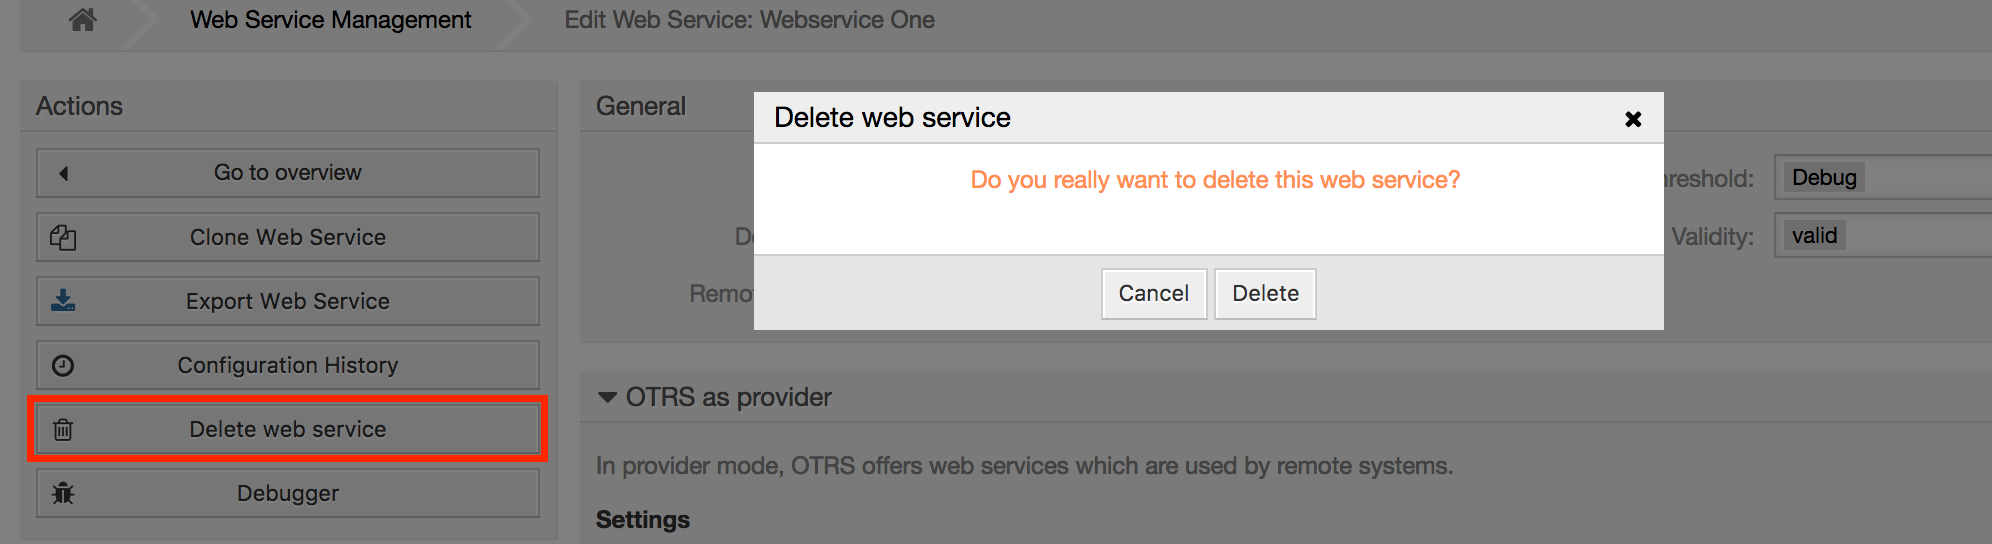 Web service delete